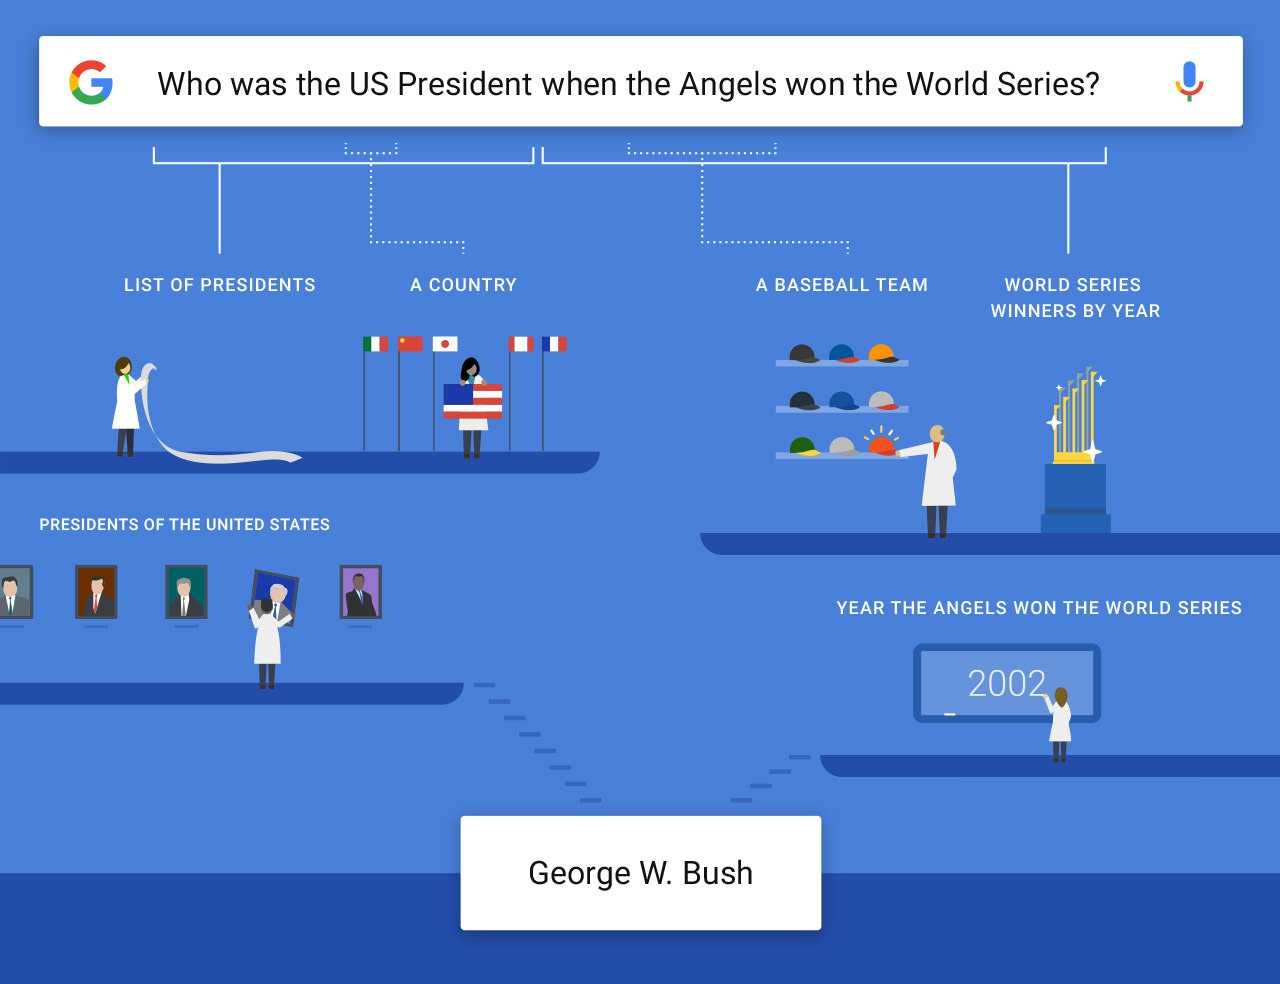 How Google app understands complex questions